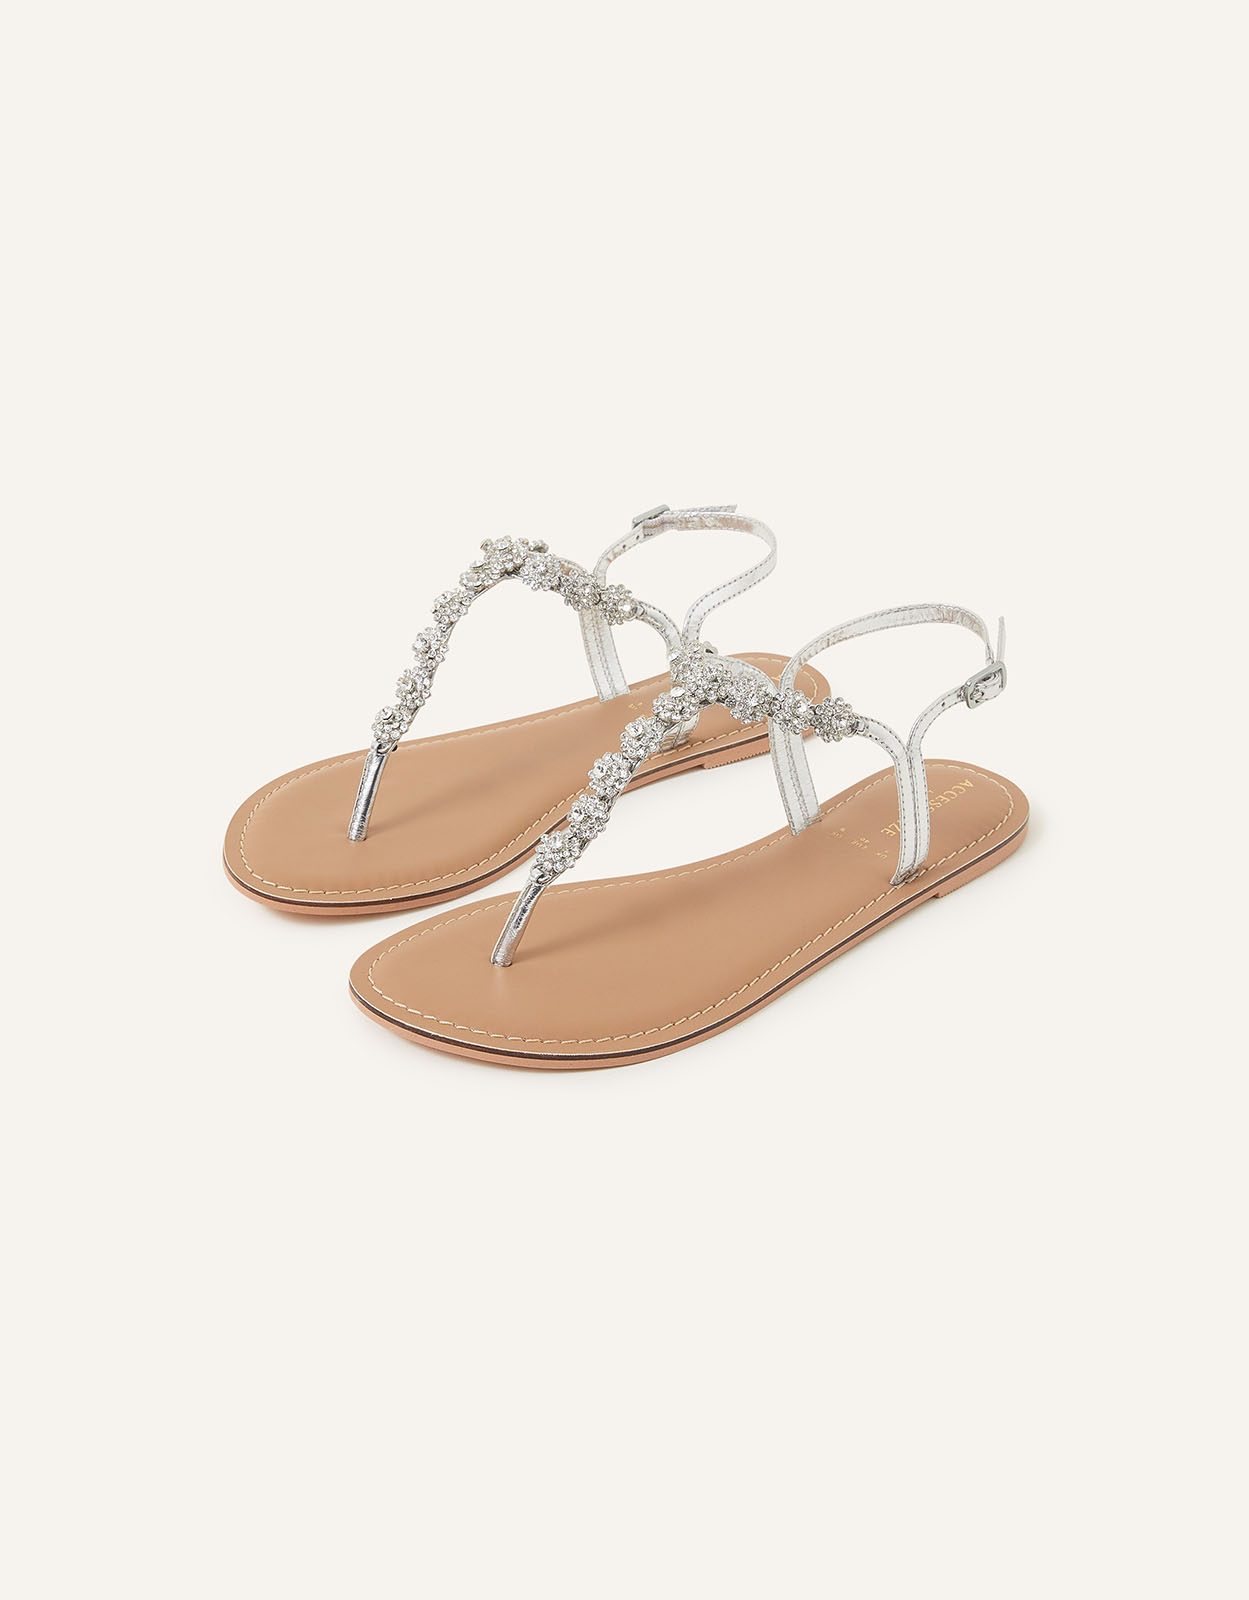 Accessorize Women's Reno Sparkle Diamante Sandals Silver, Size: 40